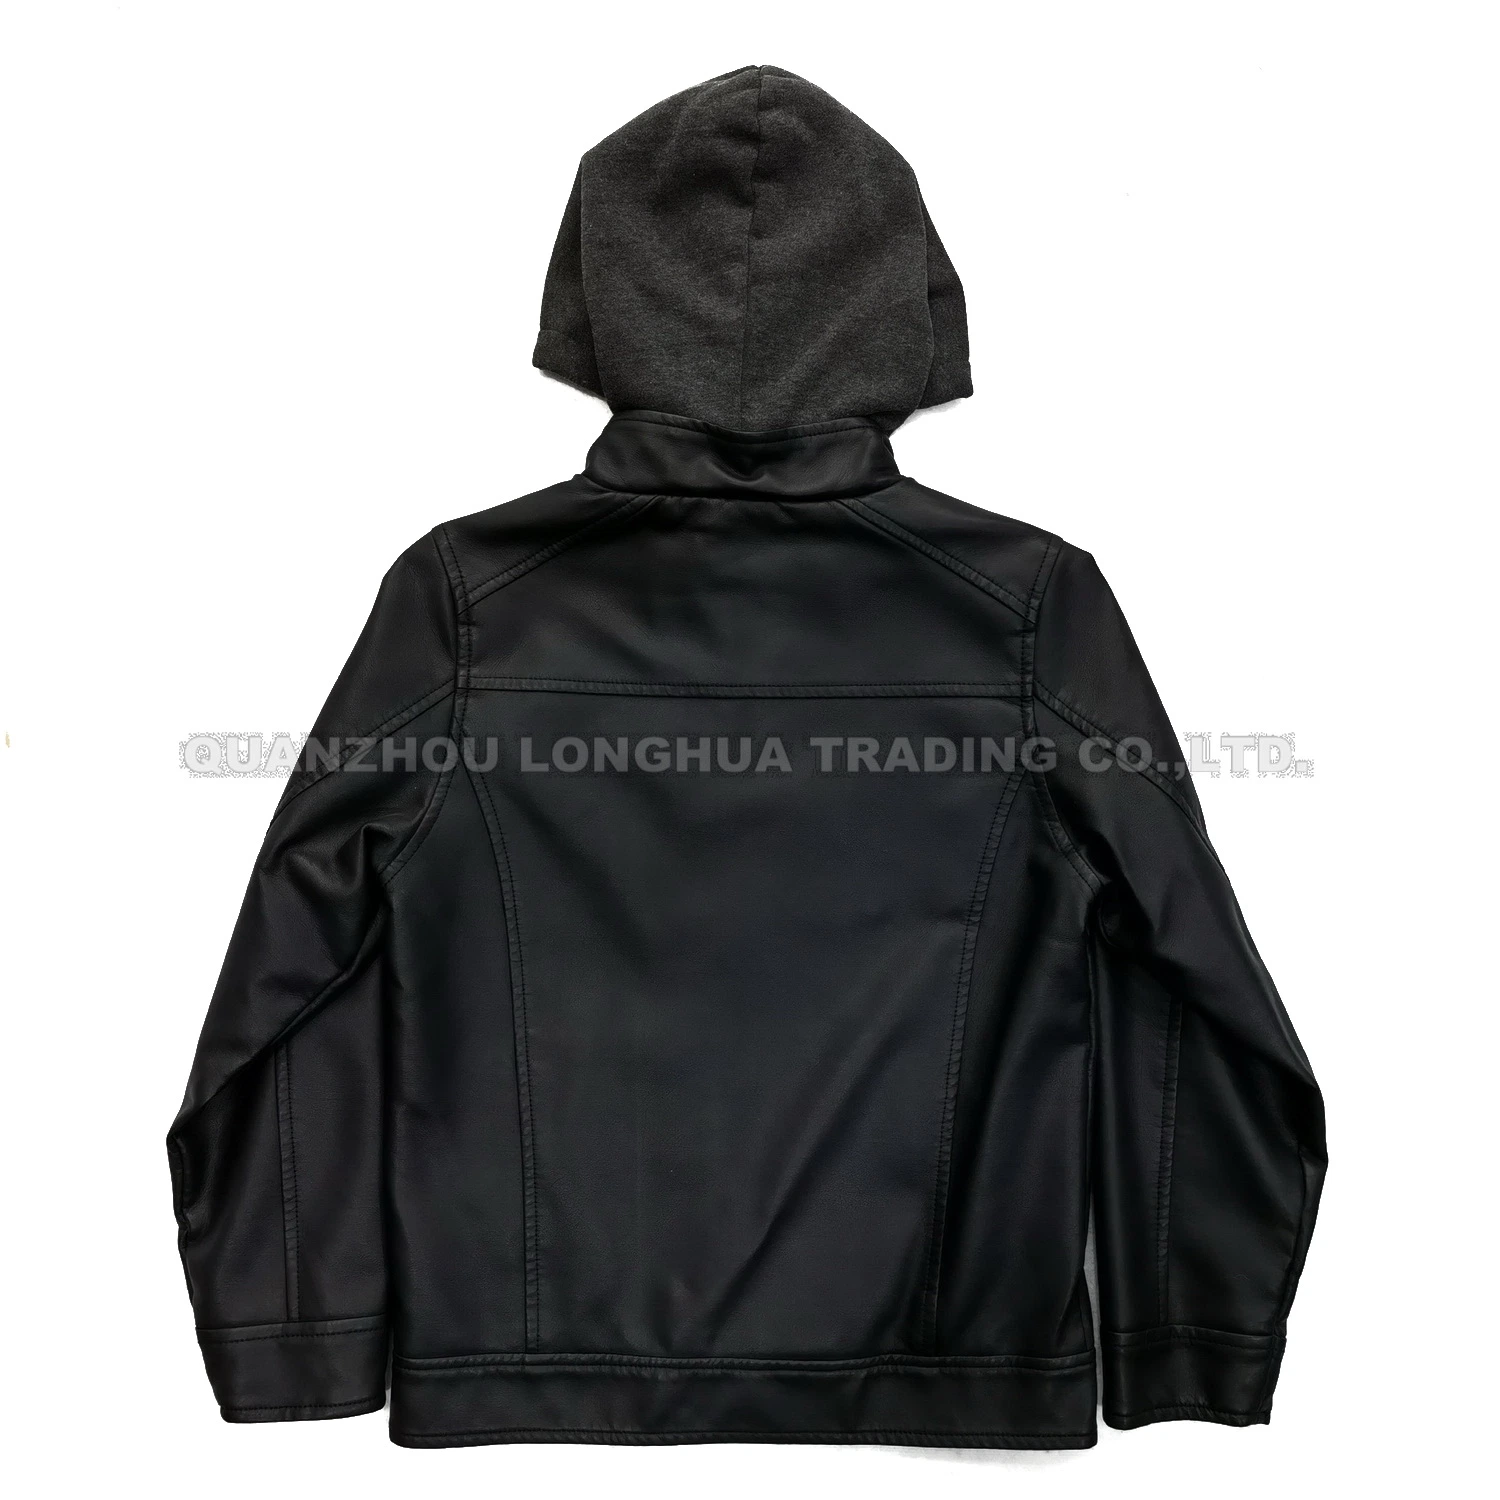 Homens Rapaz Jaqueta Casaco de couro casaco de Inverno Black PU Vestuário Vestuário Hoody roupas da moda